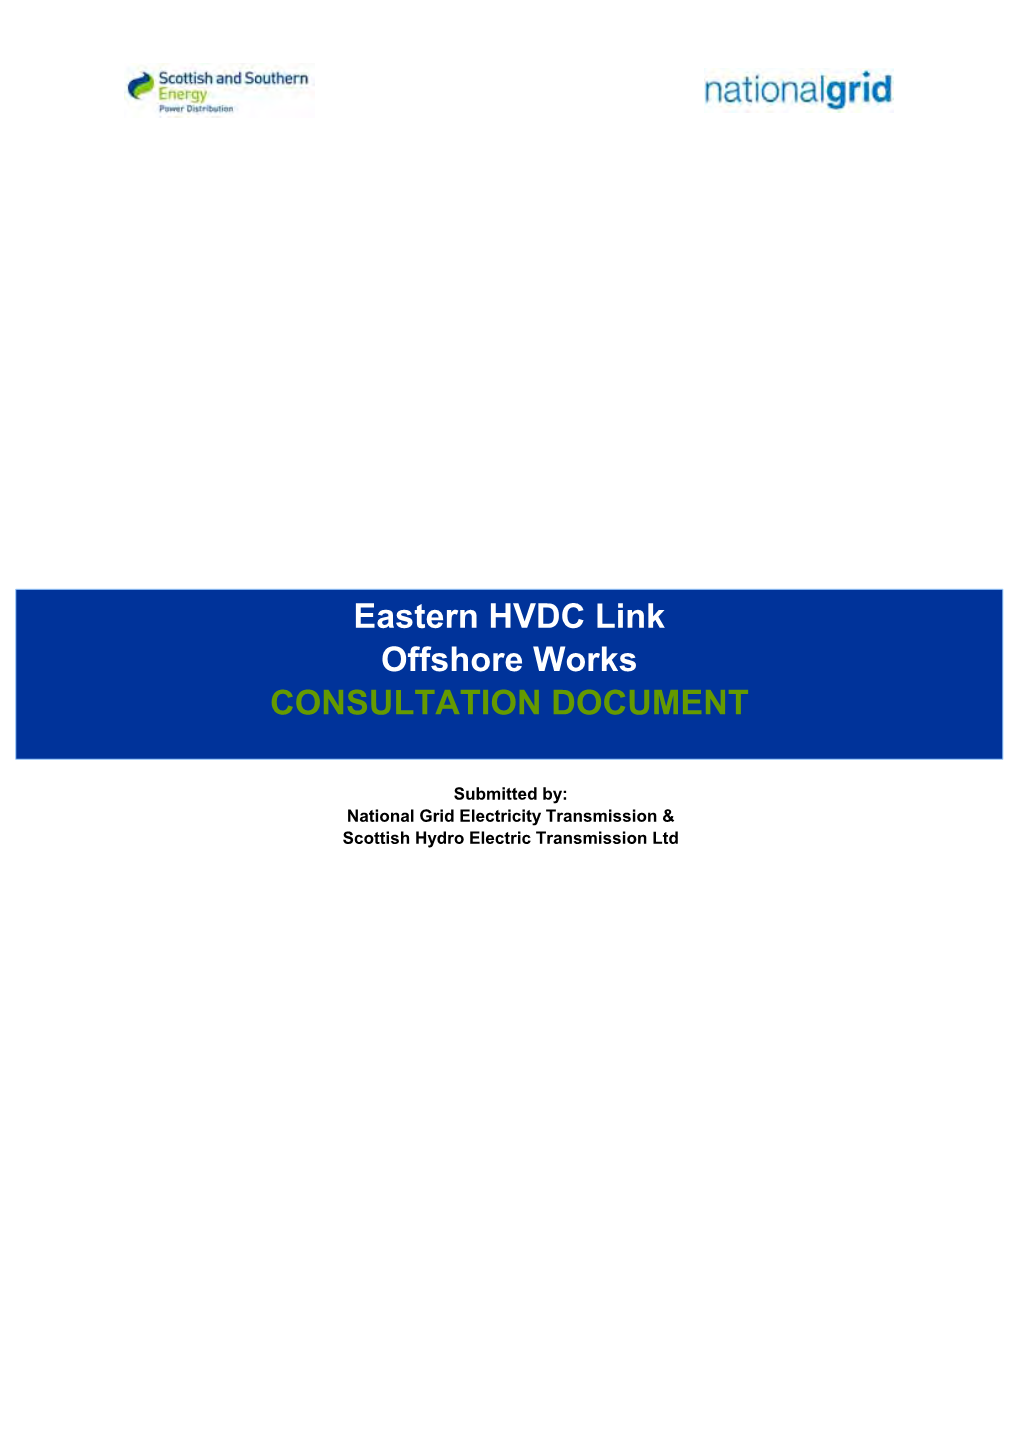 Eastern HVDC Link Offshore Works